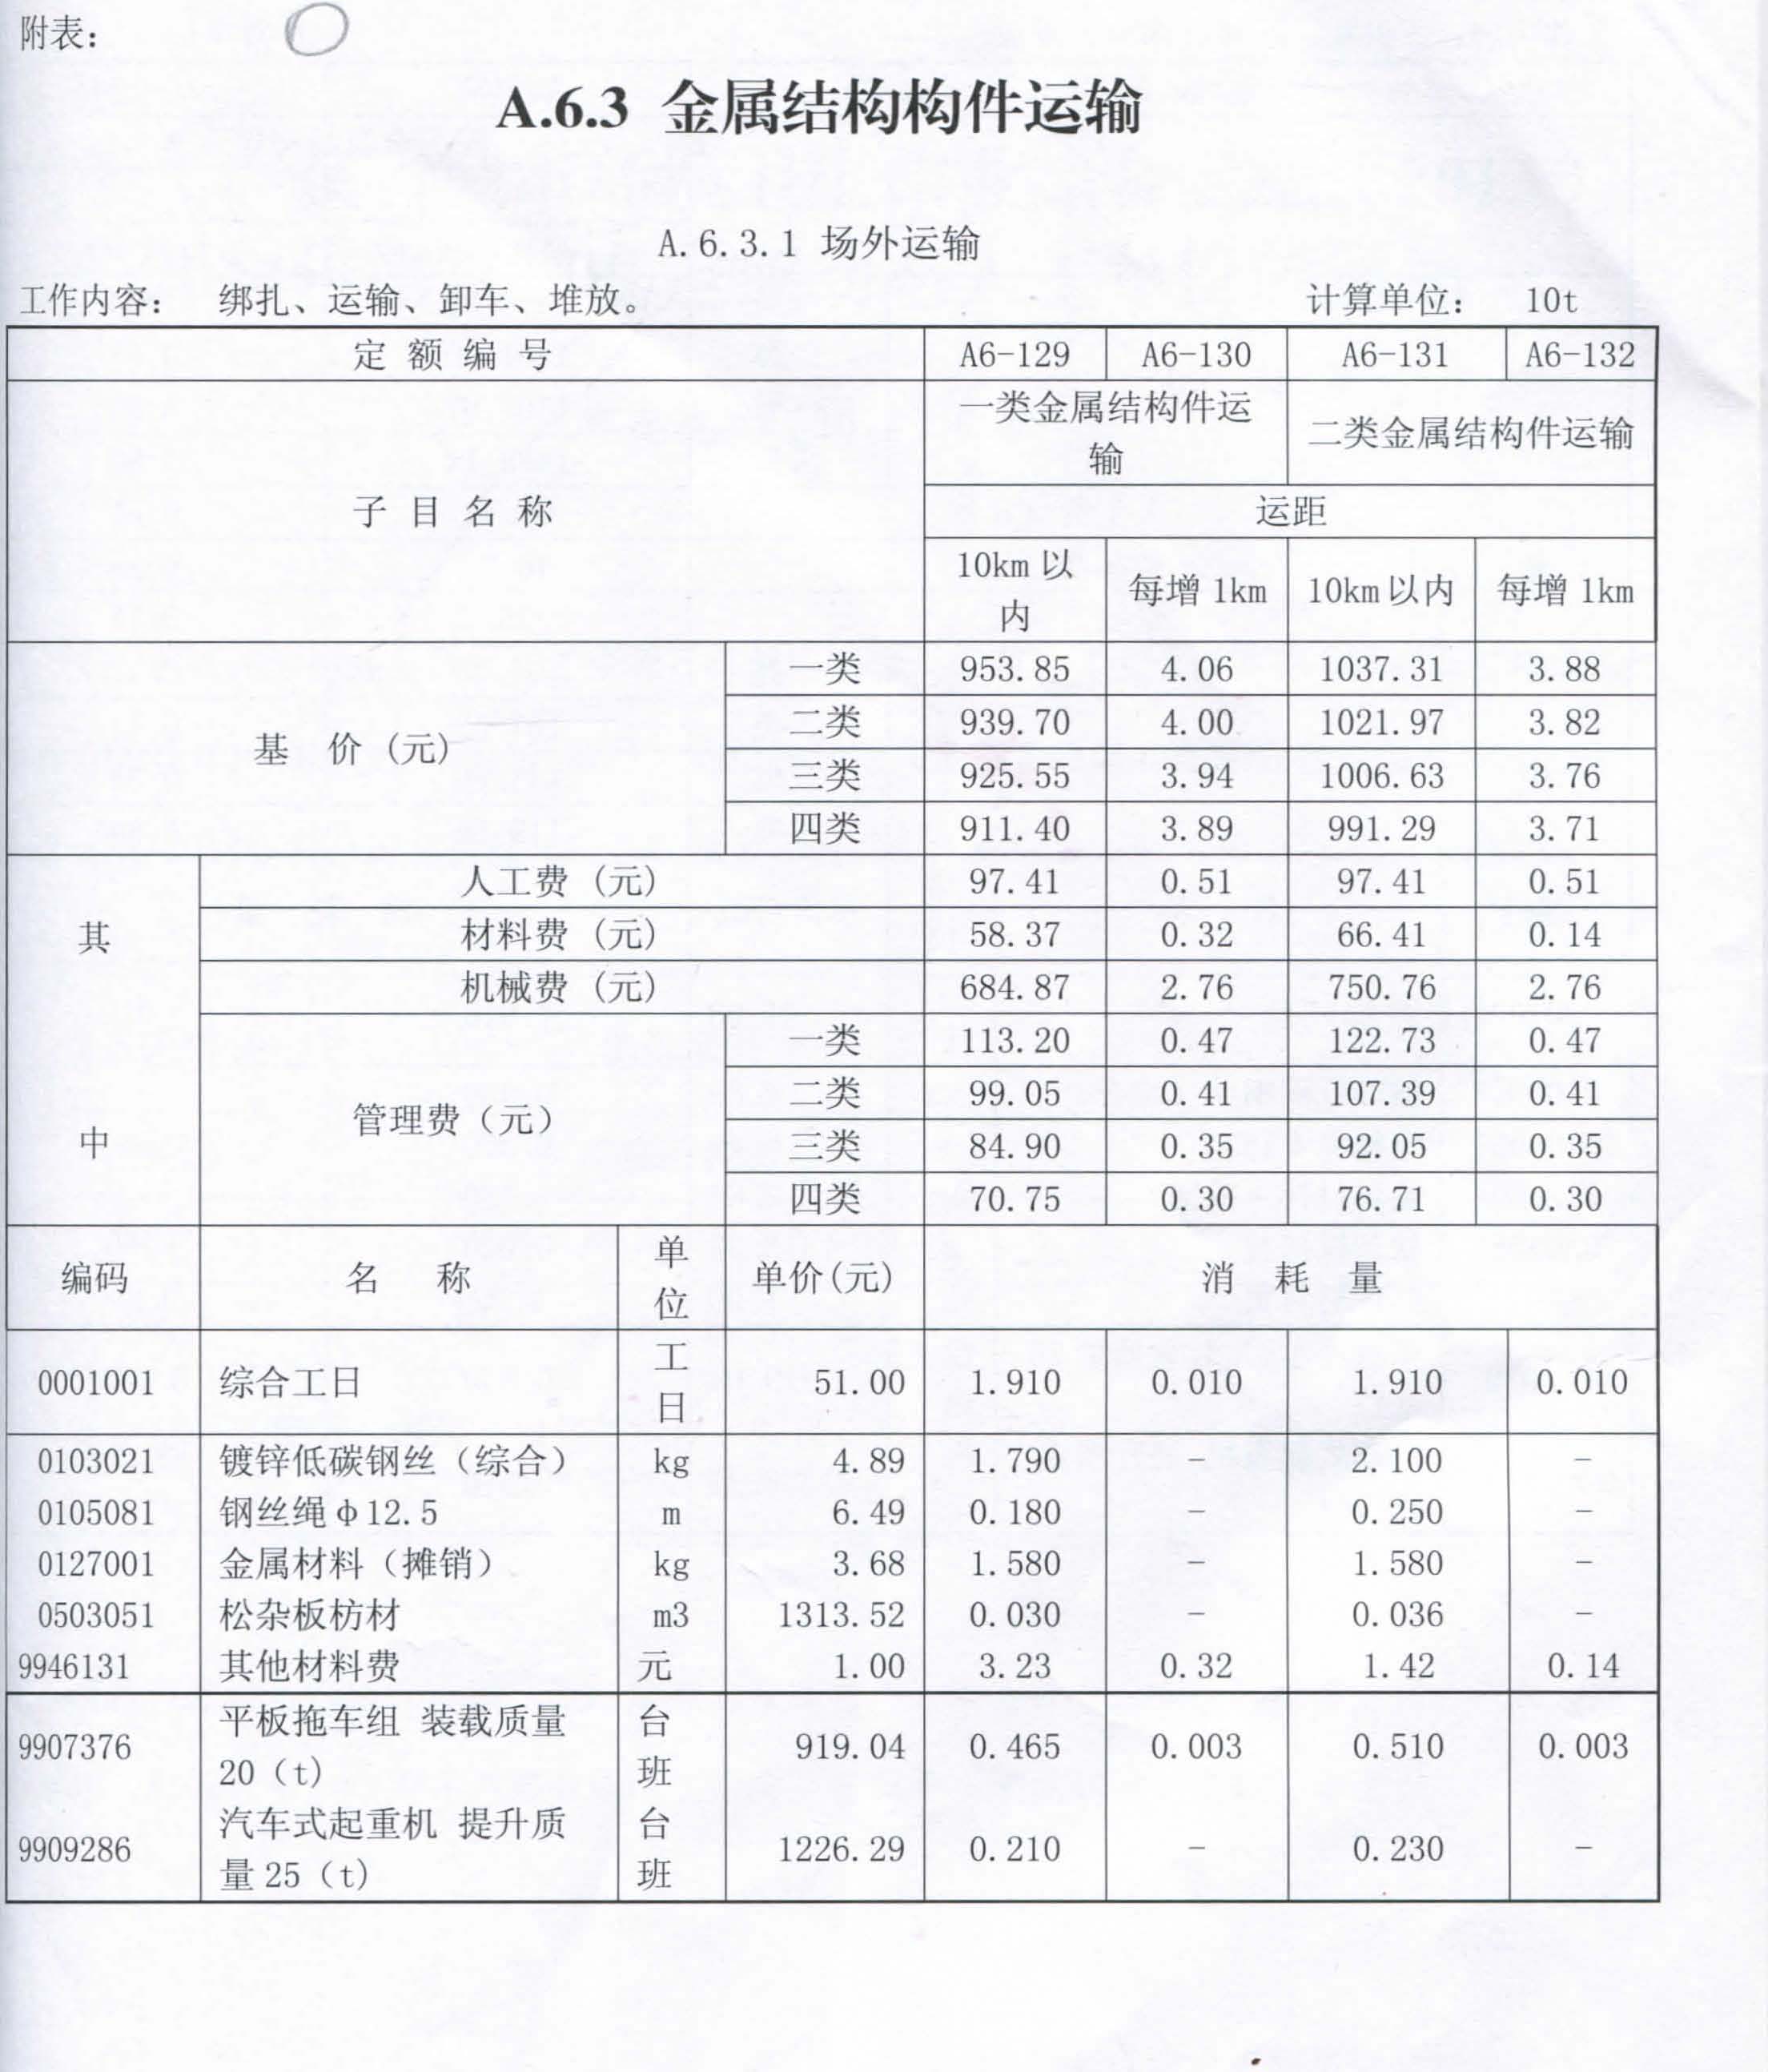 2014年惠州工程造价信息第一季度 信息补充_1